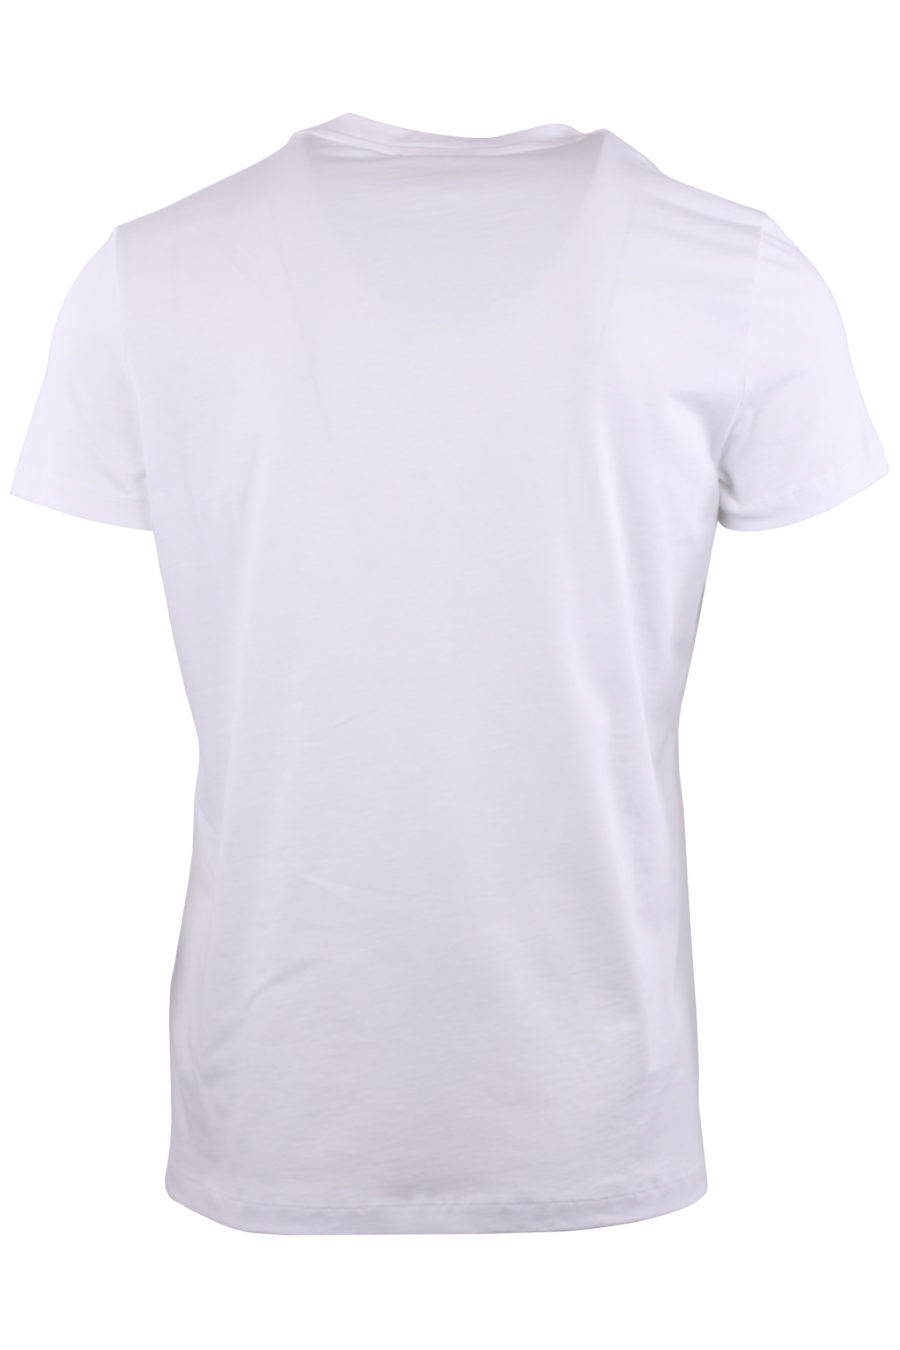 Camiseta blanca con logo de terciopelo negro - 3719cdf0d699293bd19e2372da1885541ce1c4ec